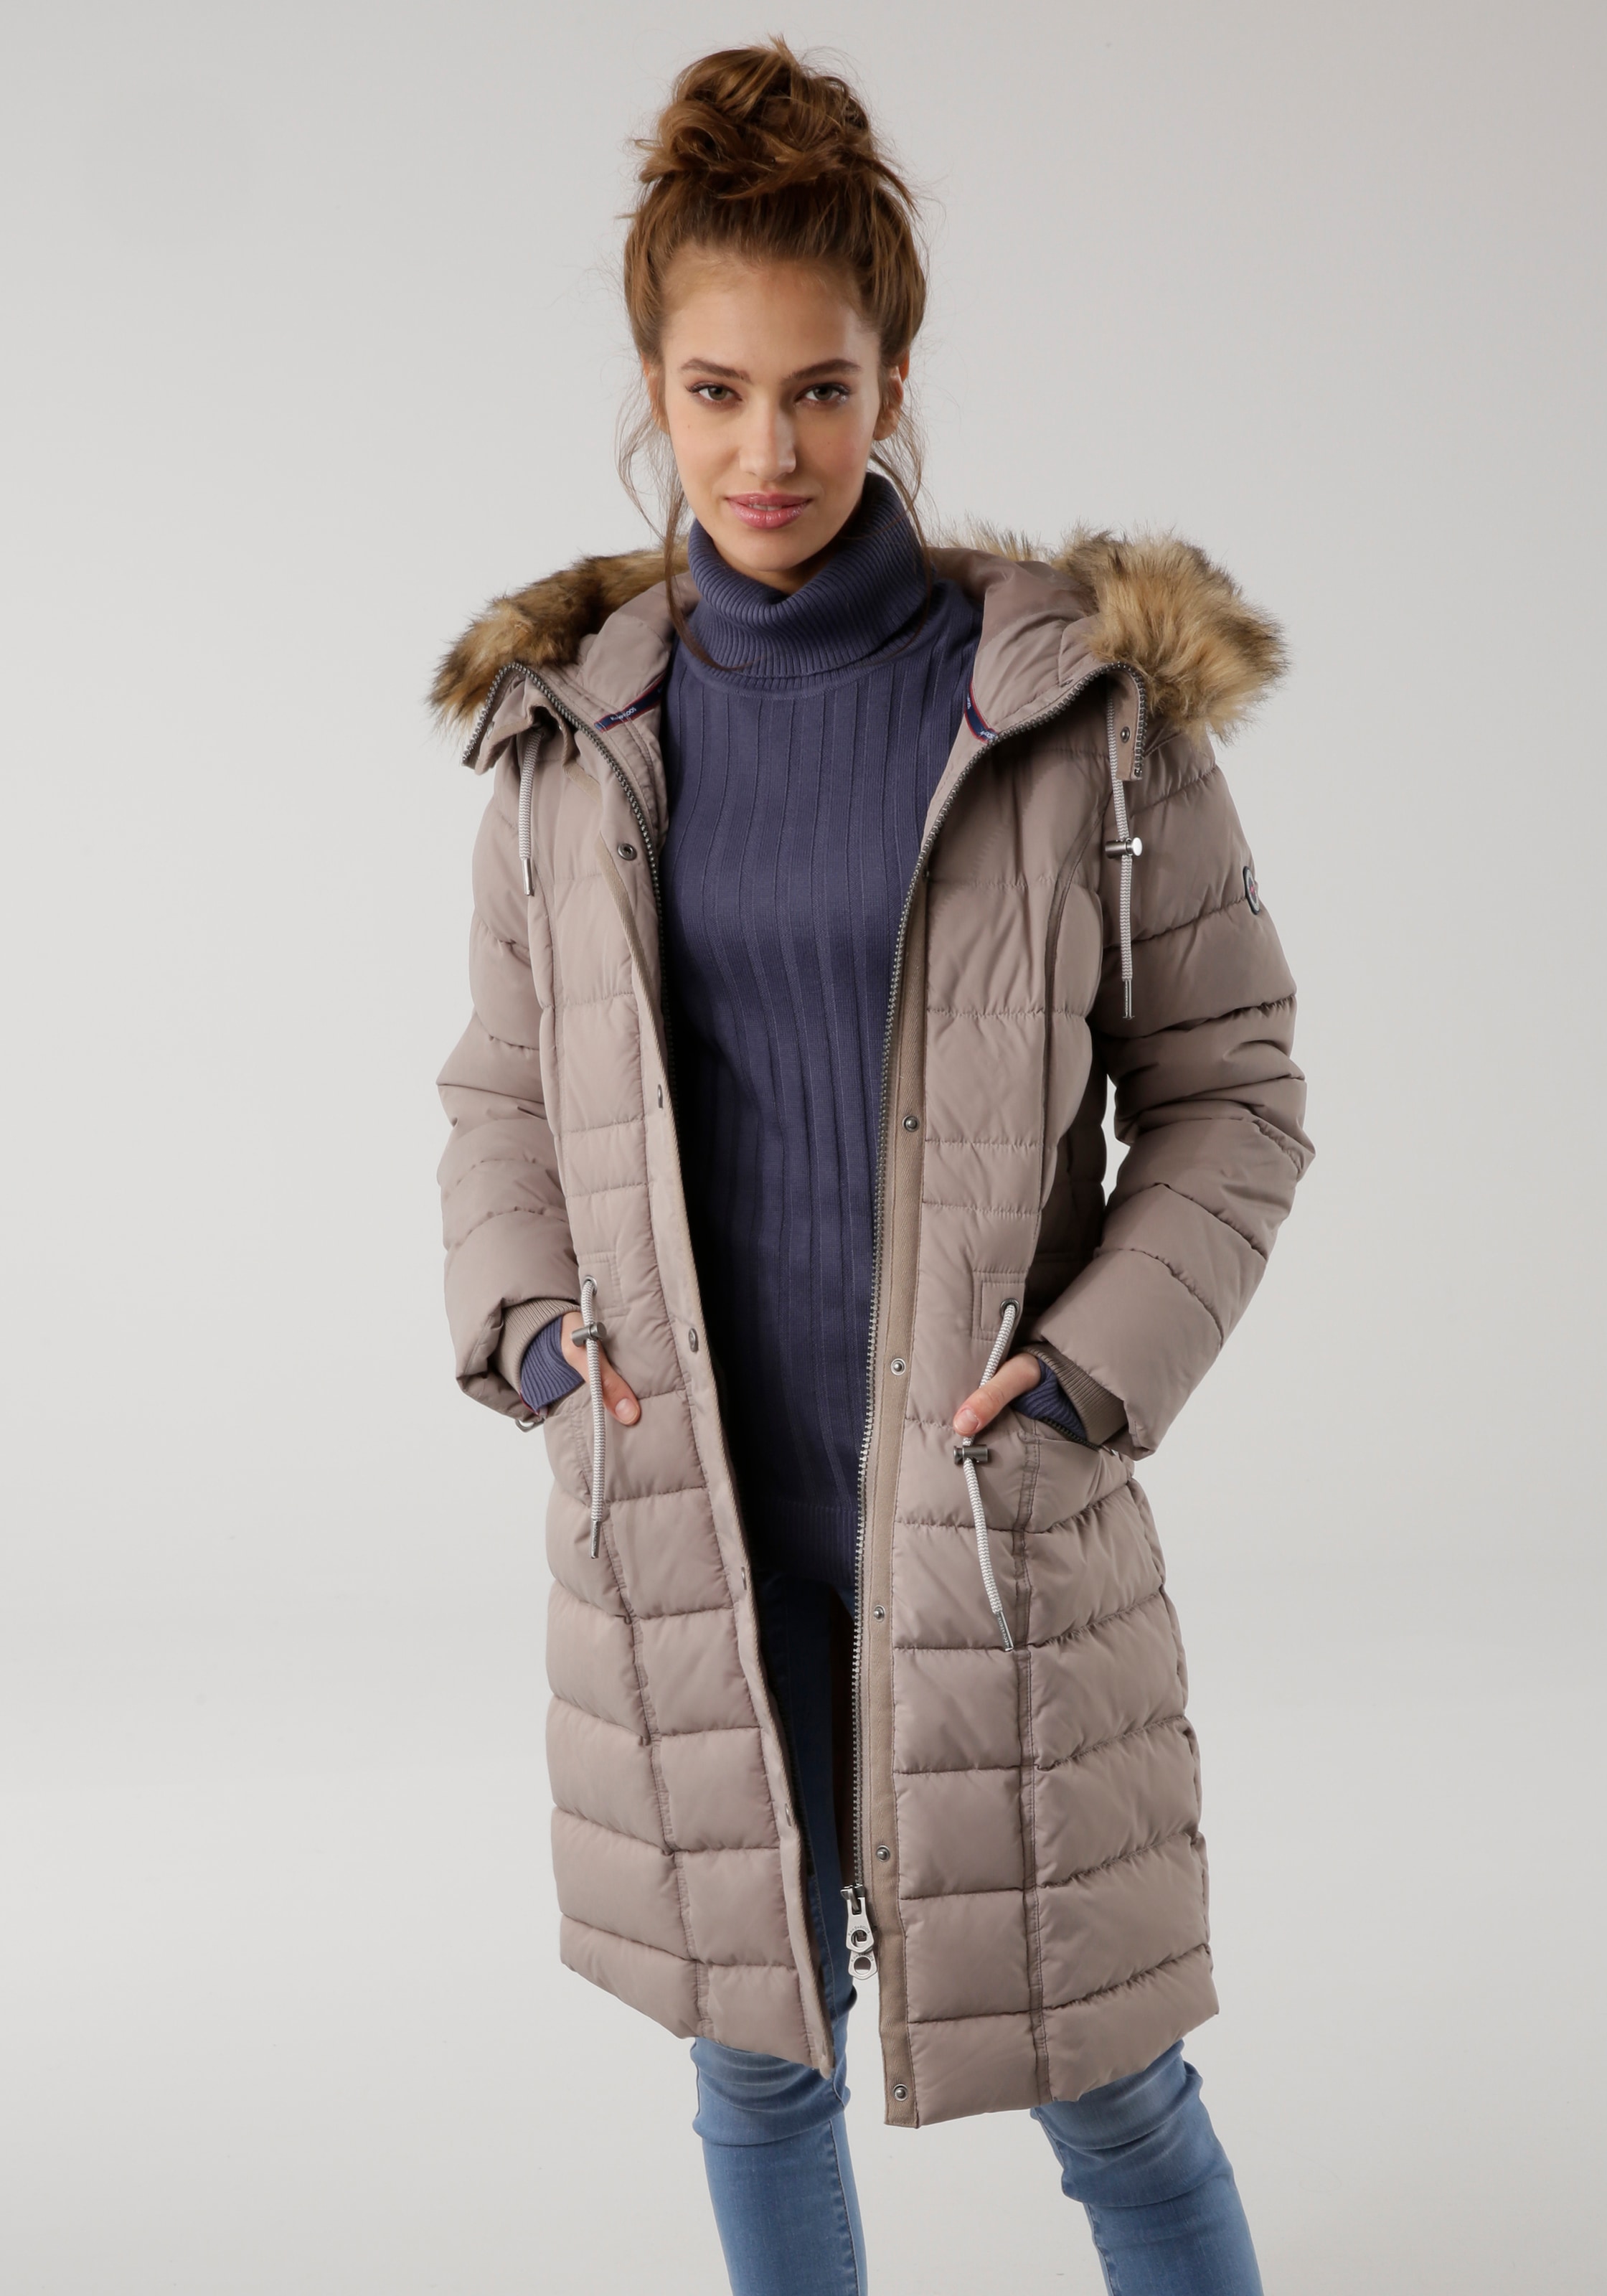 Graue Jacken für Frauen online bestellen | BAUR